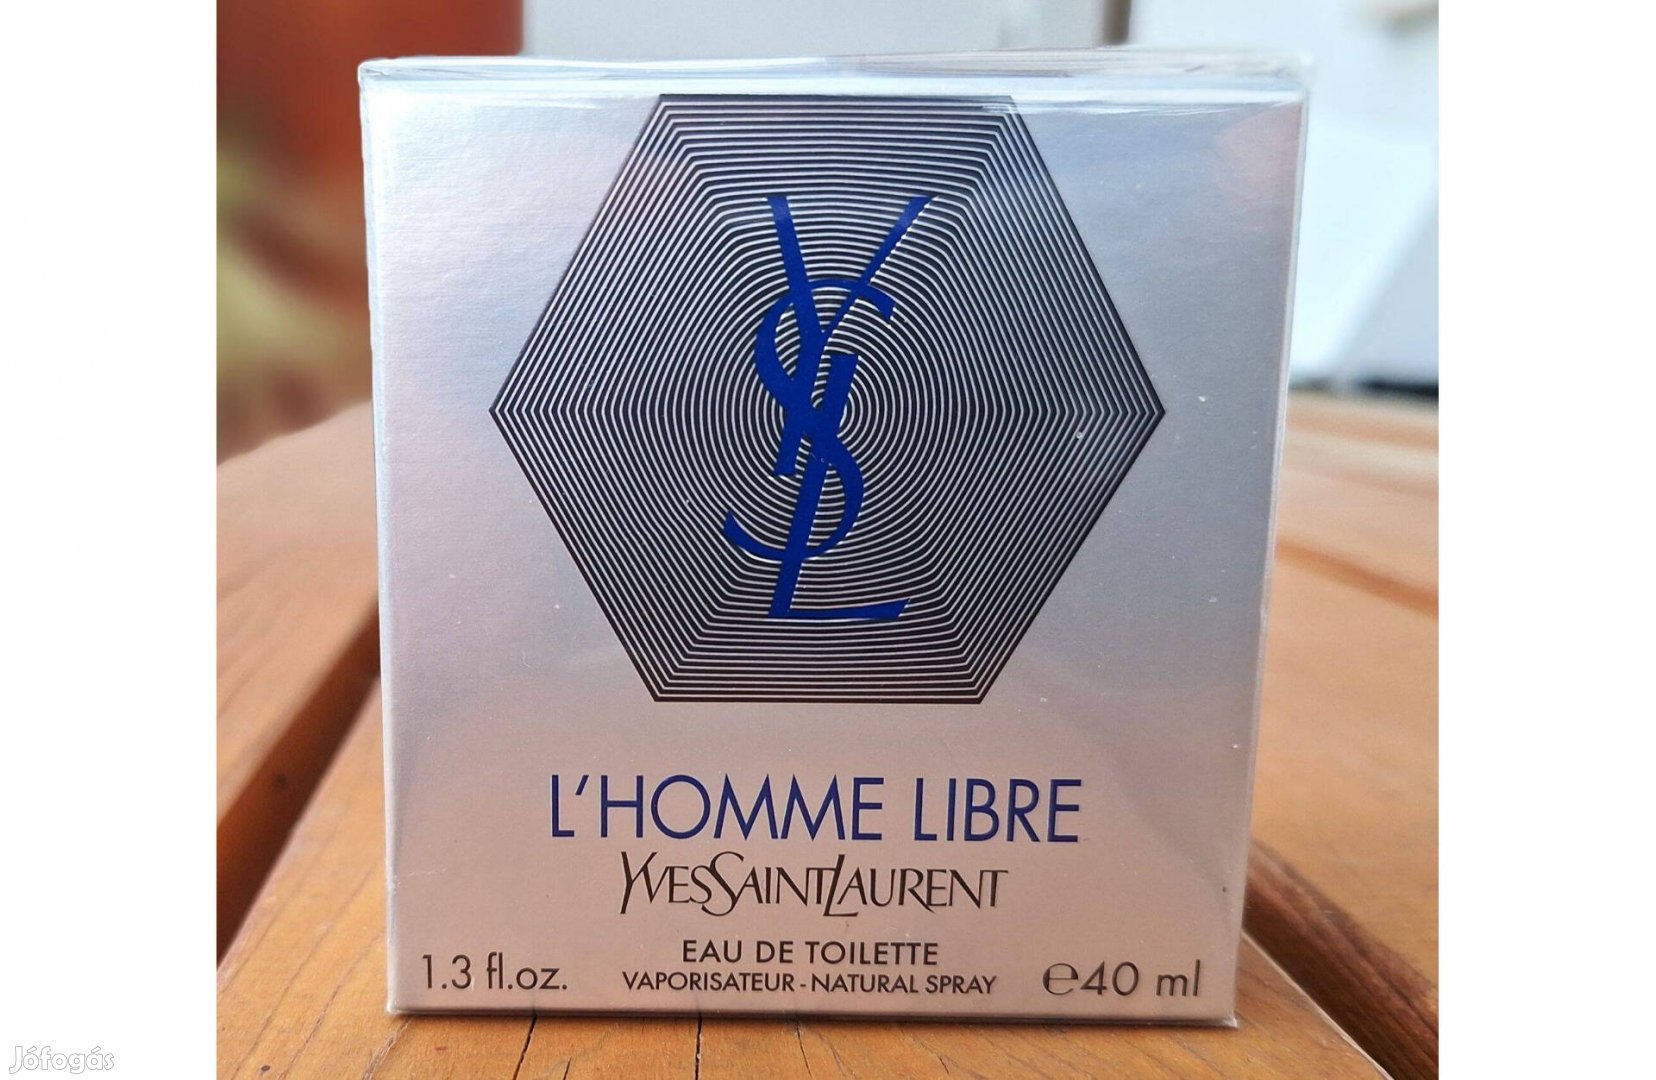 Yves Saint Laurent - L'Homme Libre EDT 40 ml